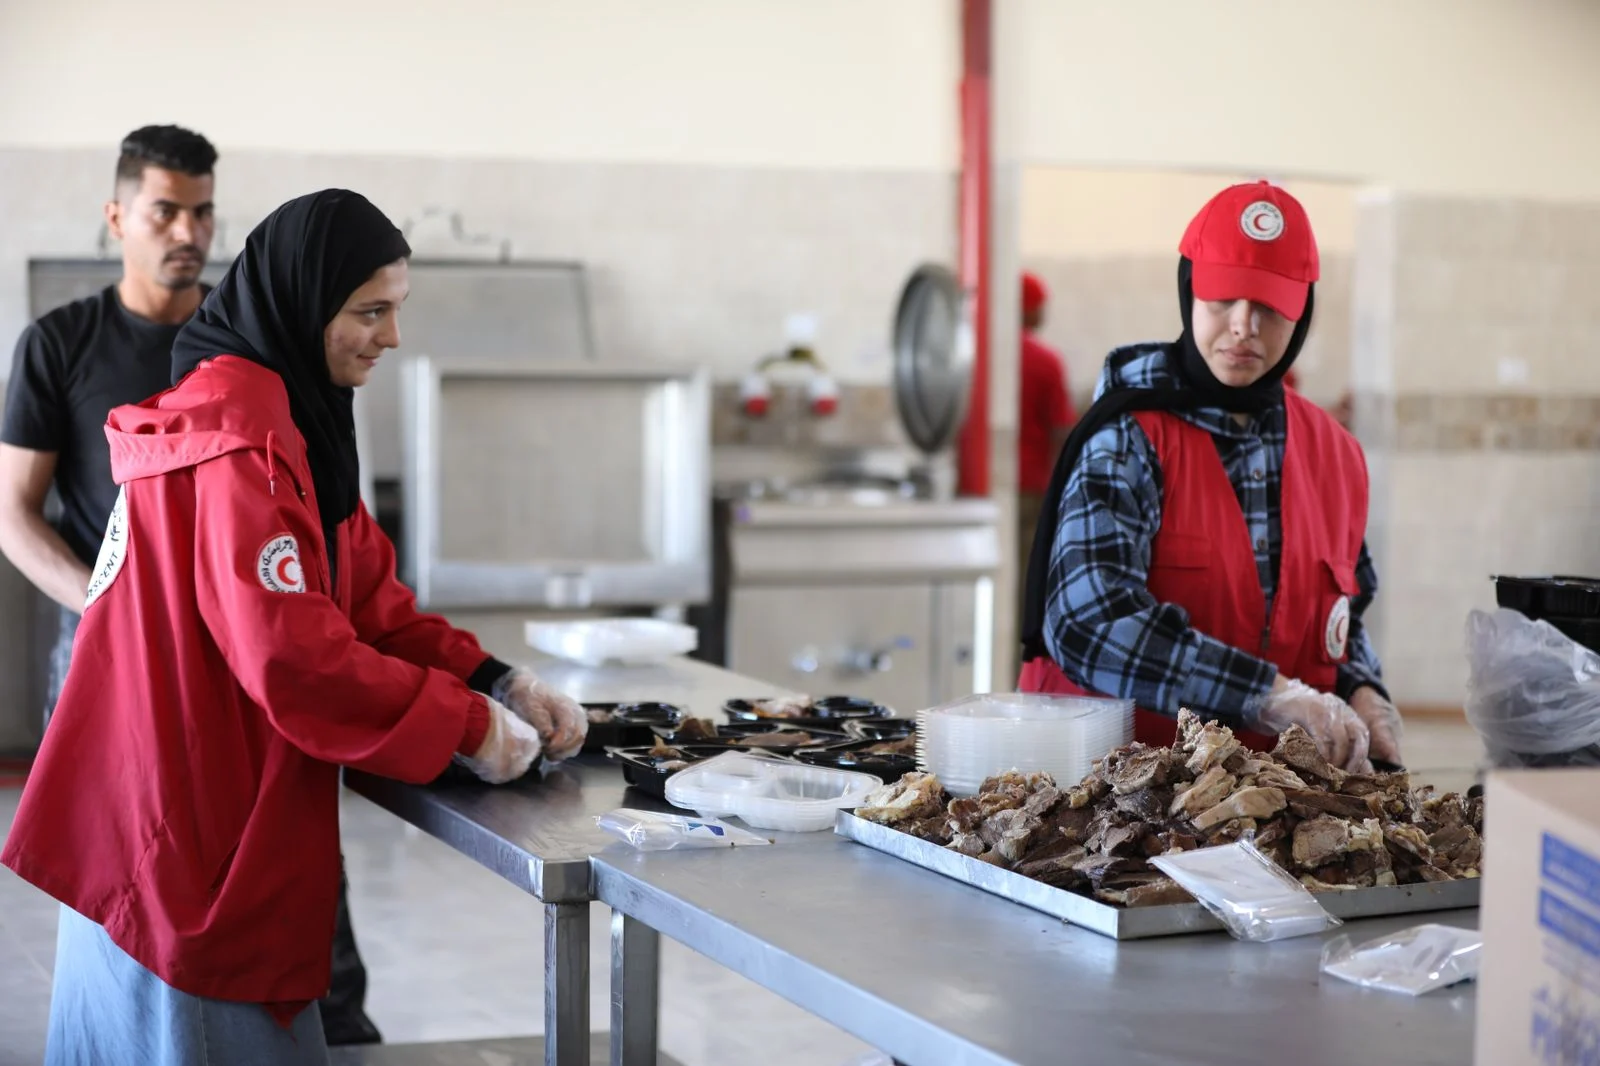 تحت شعار "مطبخ إنساني يطعم أملا"  إنتاج 7 آلاف وجبة يوميا للأسر النازحة في قطاع غزة 6